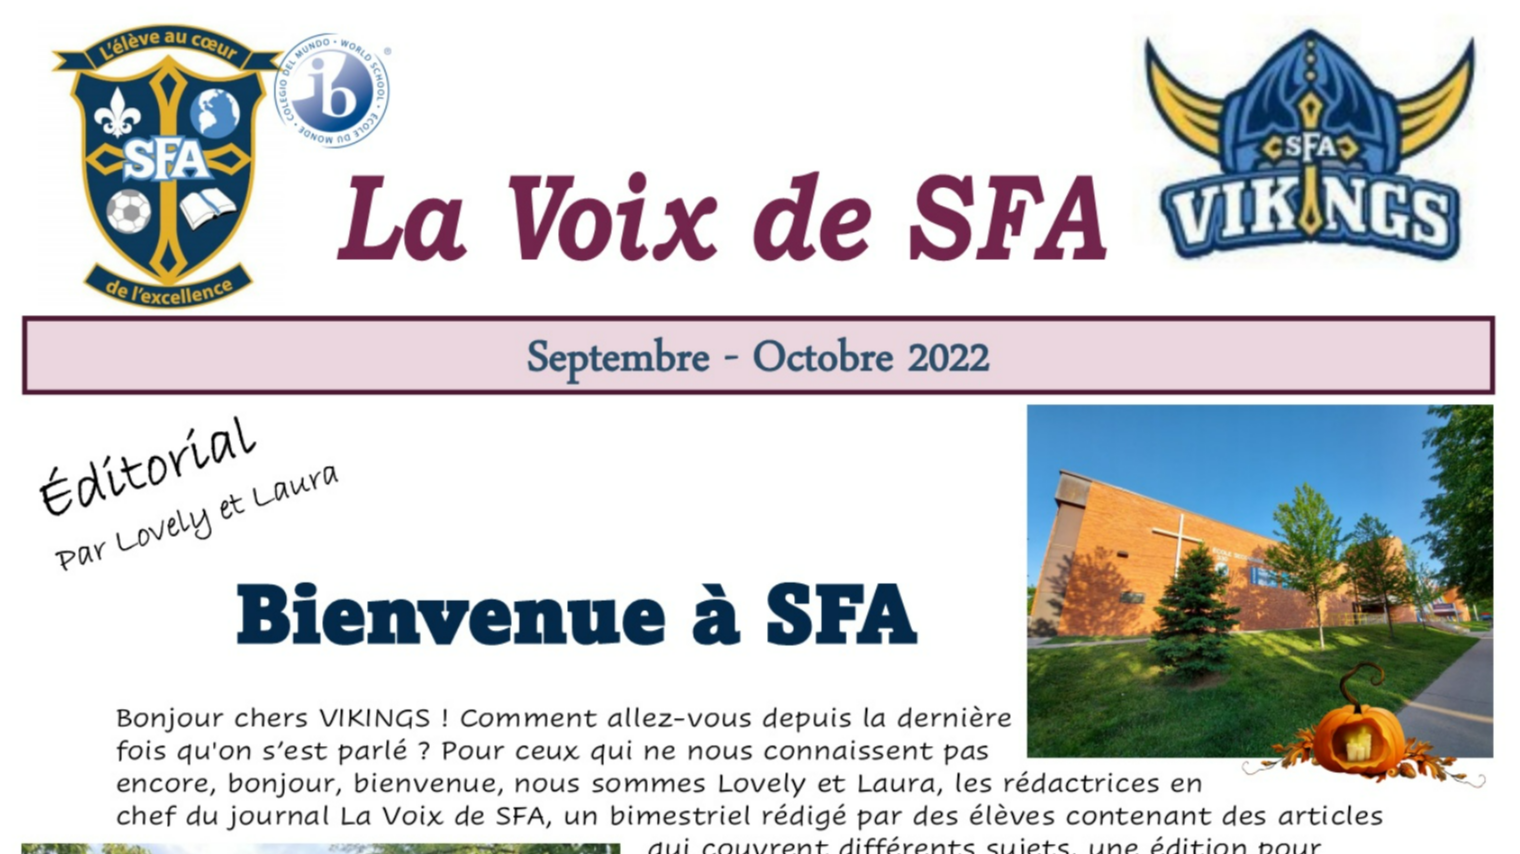 Image couverture du joural de la Voix de SFA du mois de Septembre-Octobre